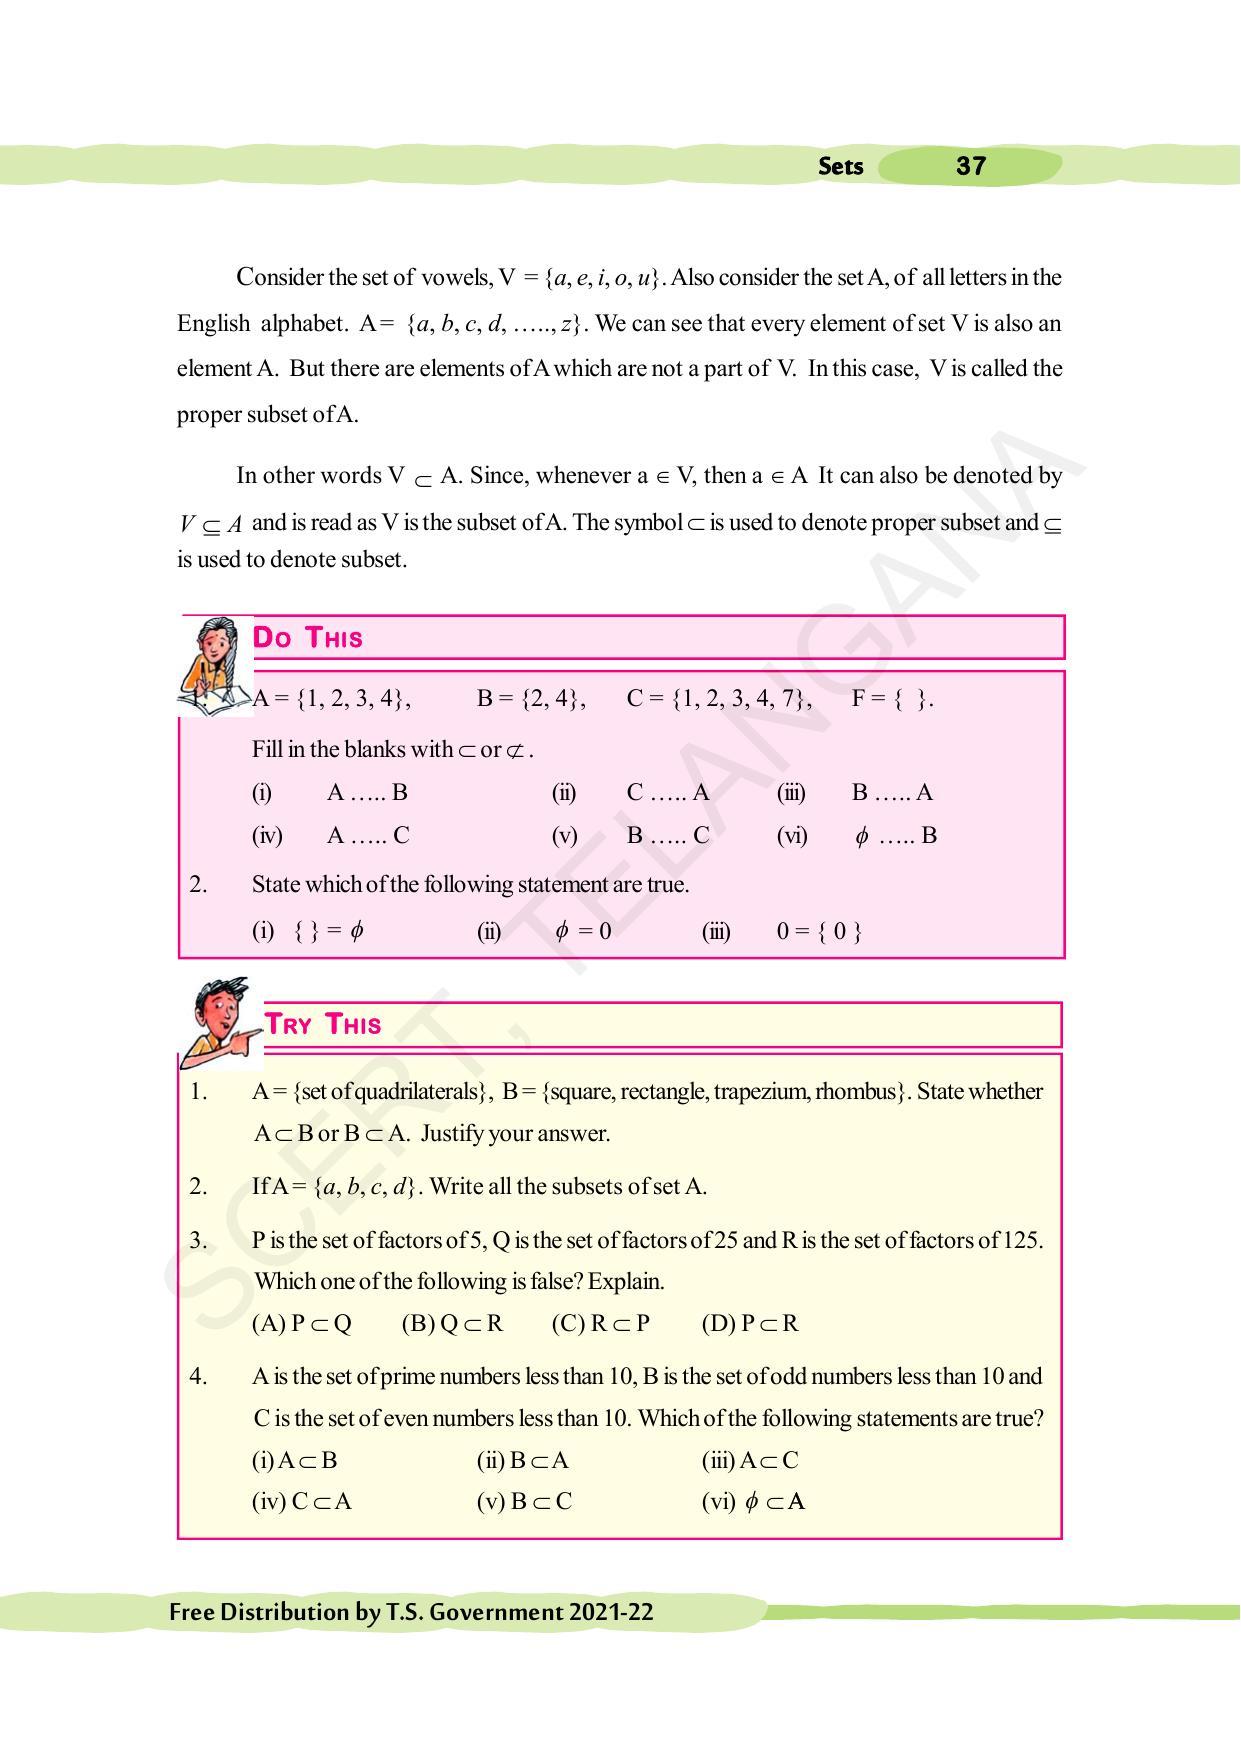 TS SCERT Class 10 Maths (English Medium) Text Book - Page 47